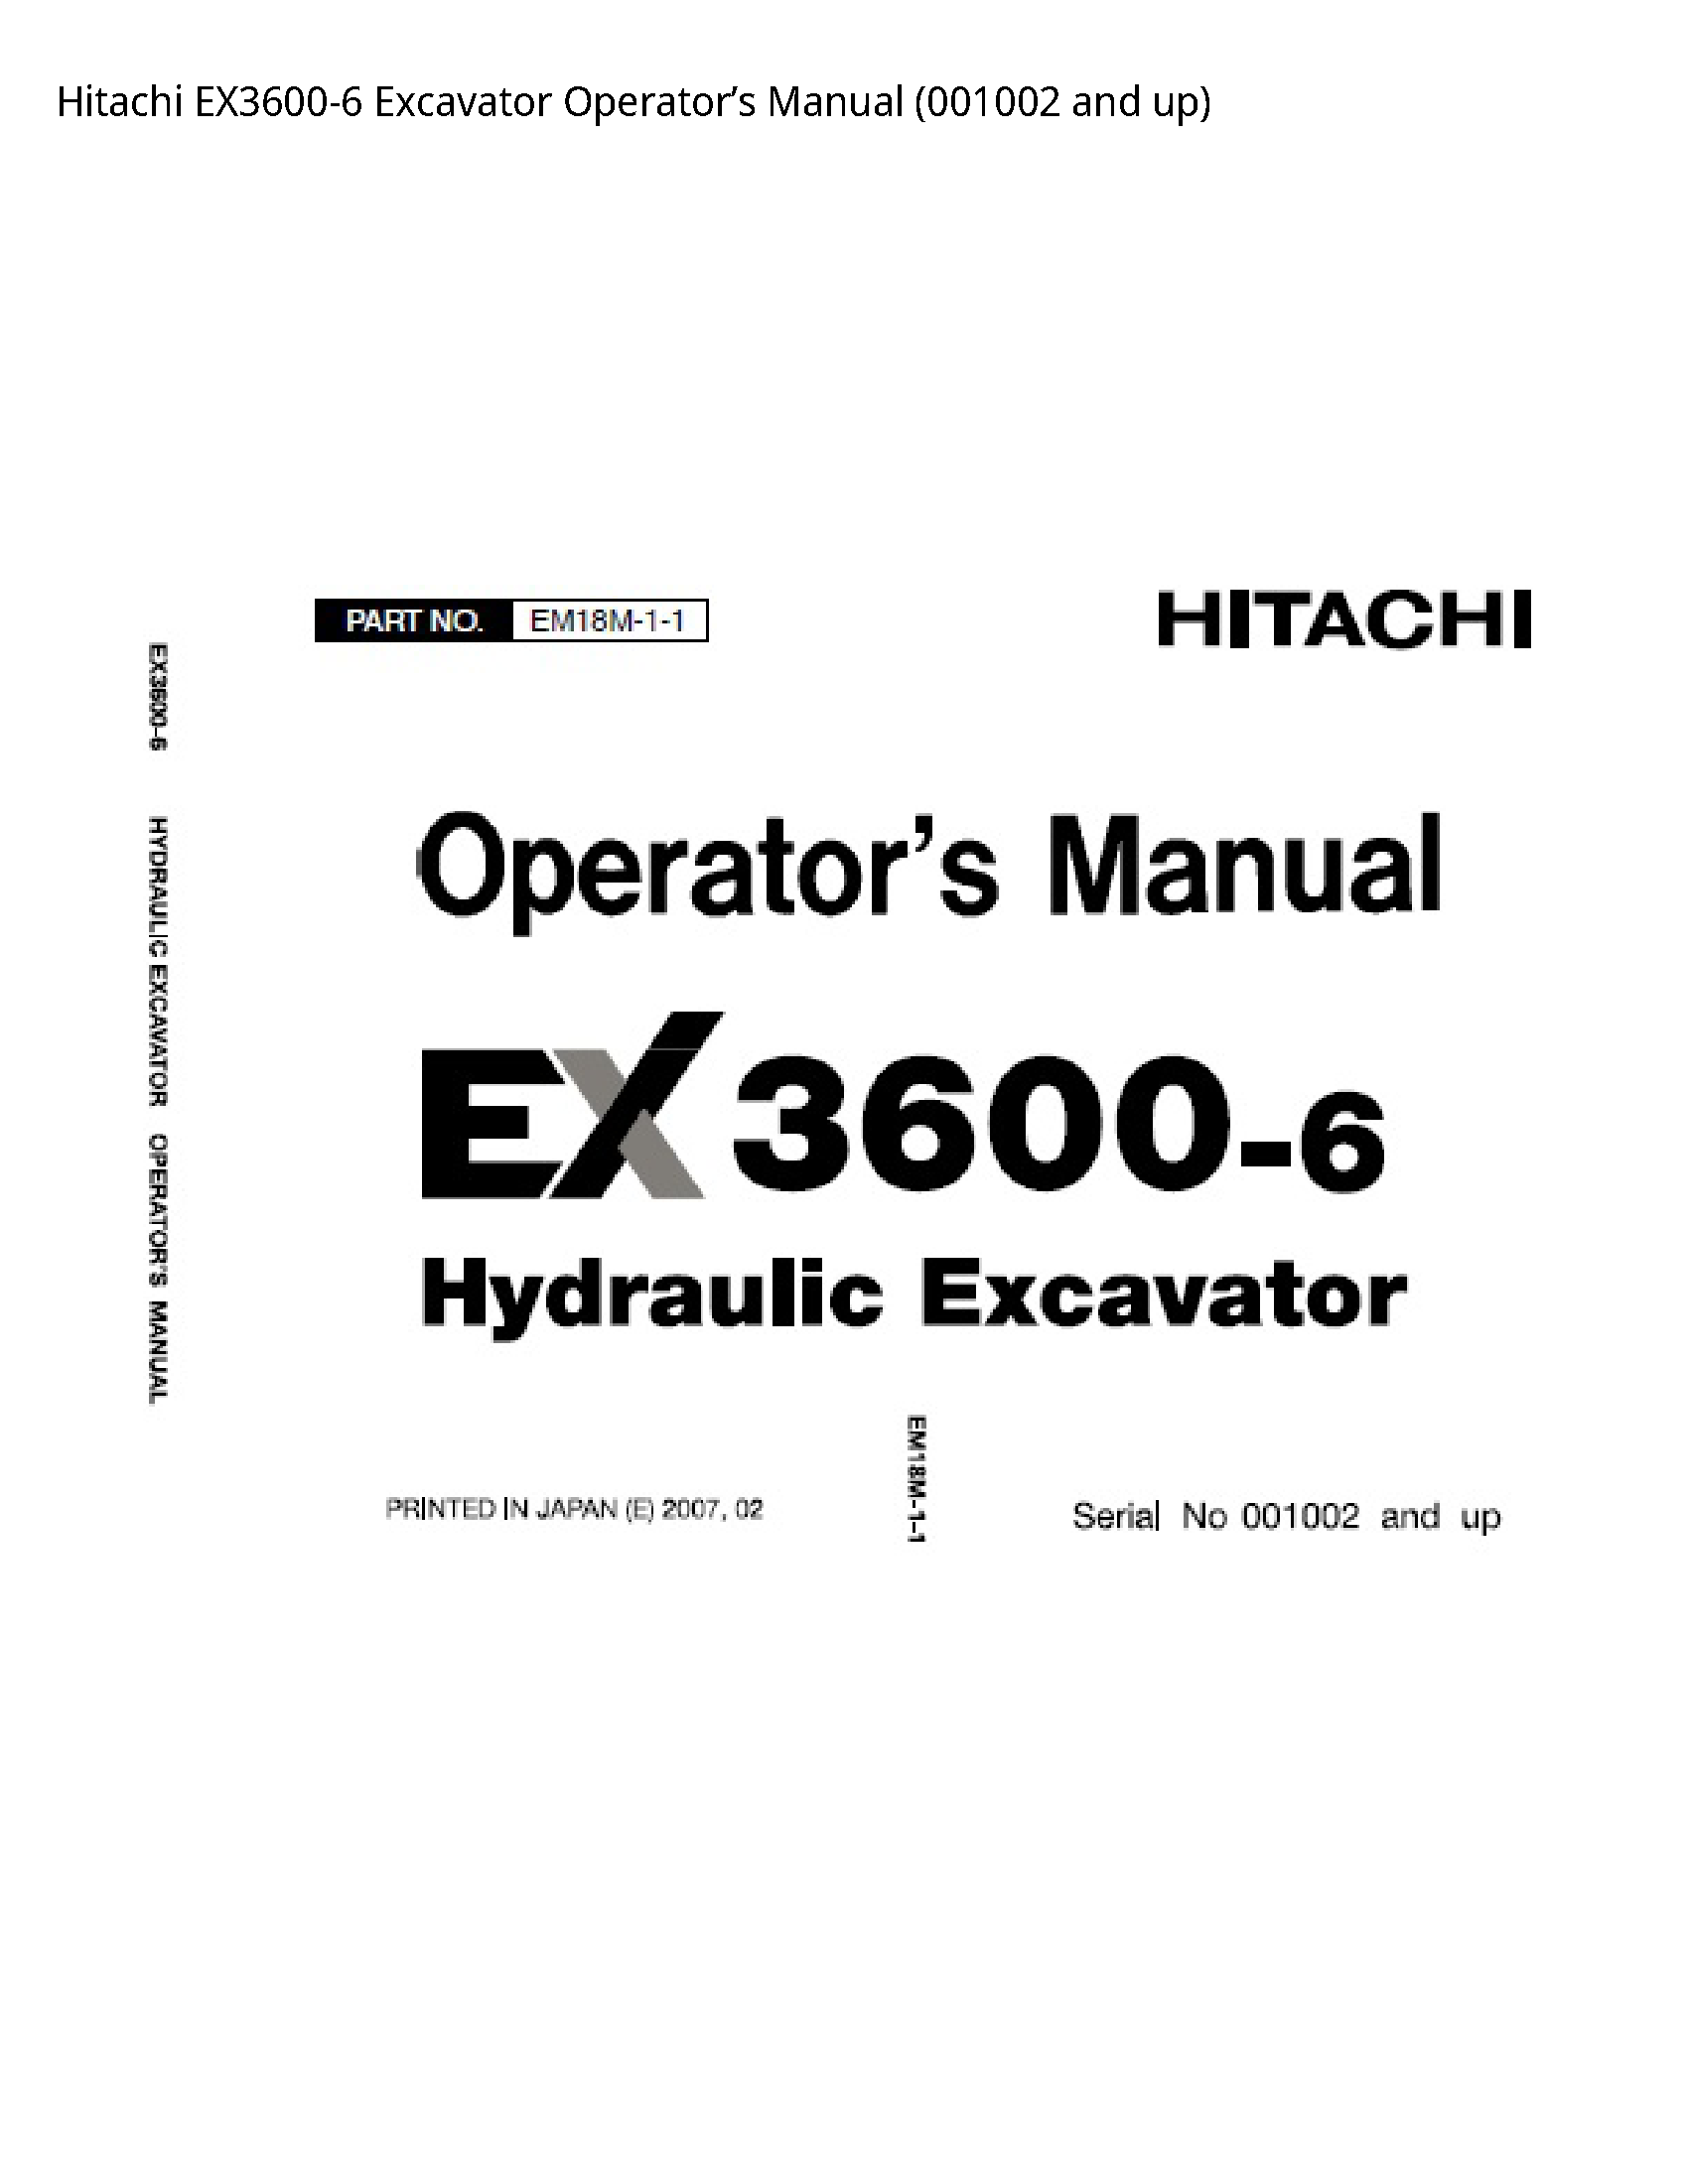 Hitachi EX3600-6 Excavator Operator’s manual